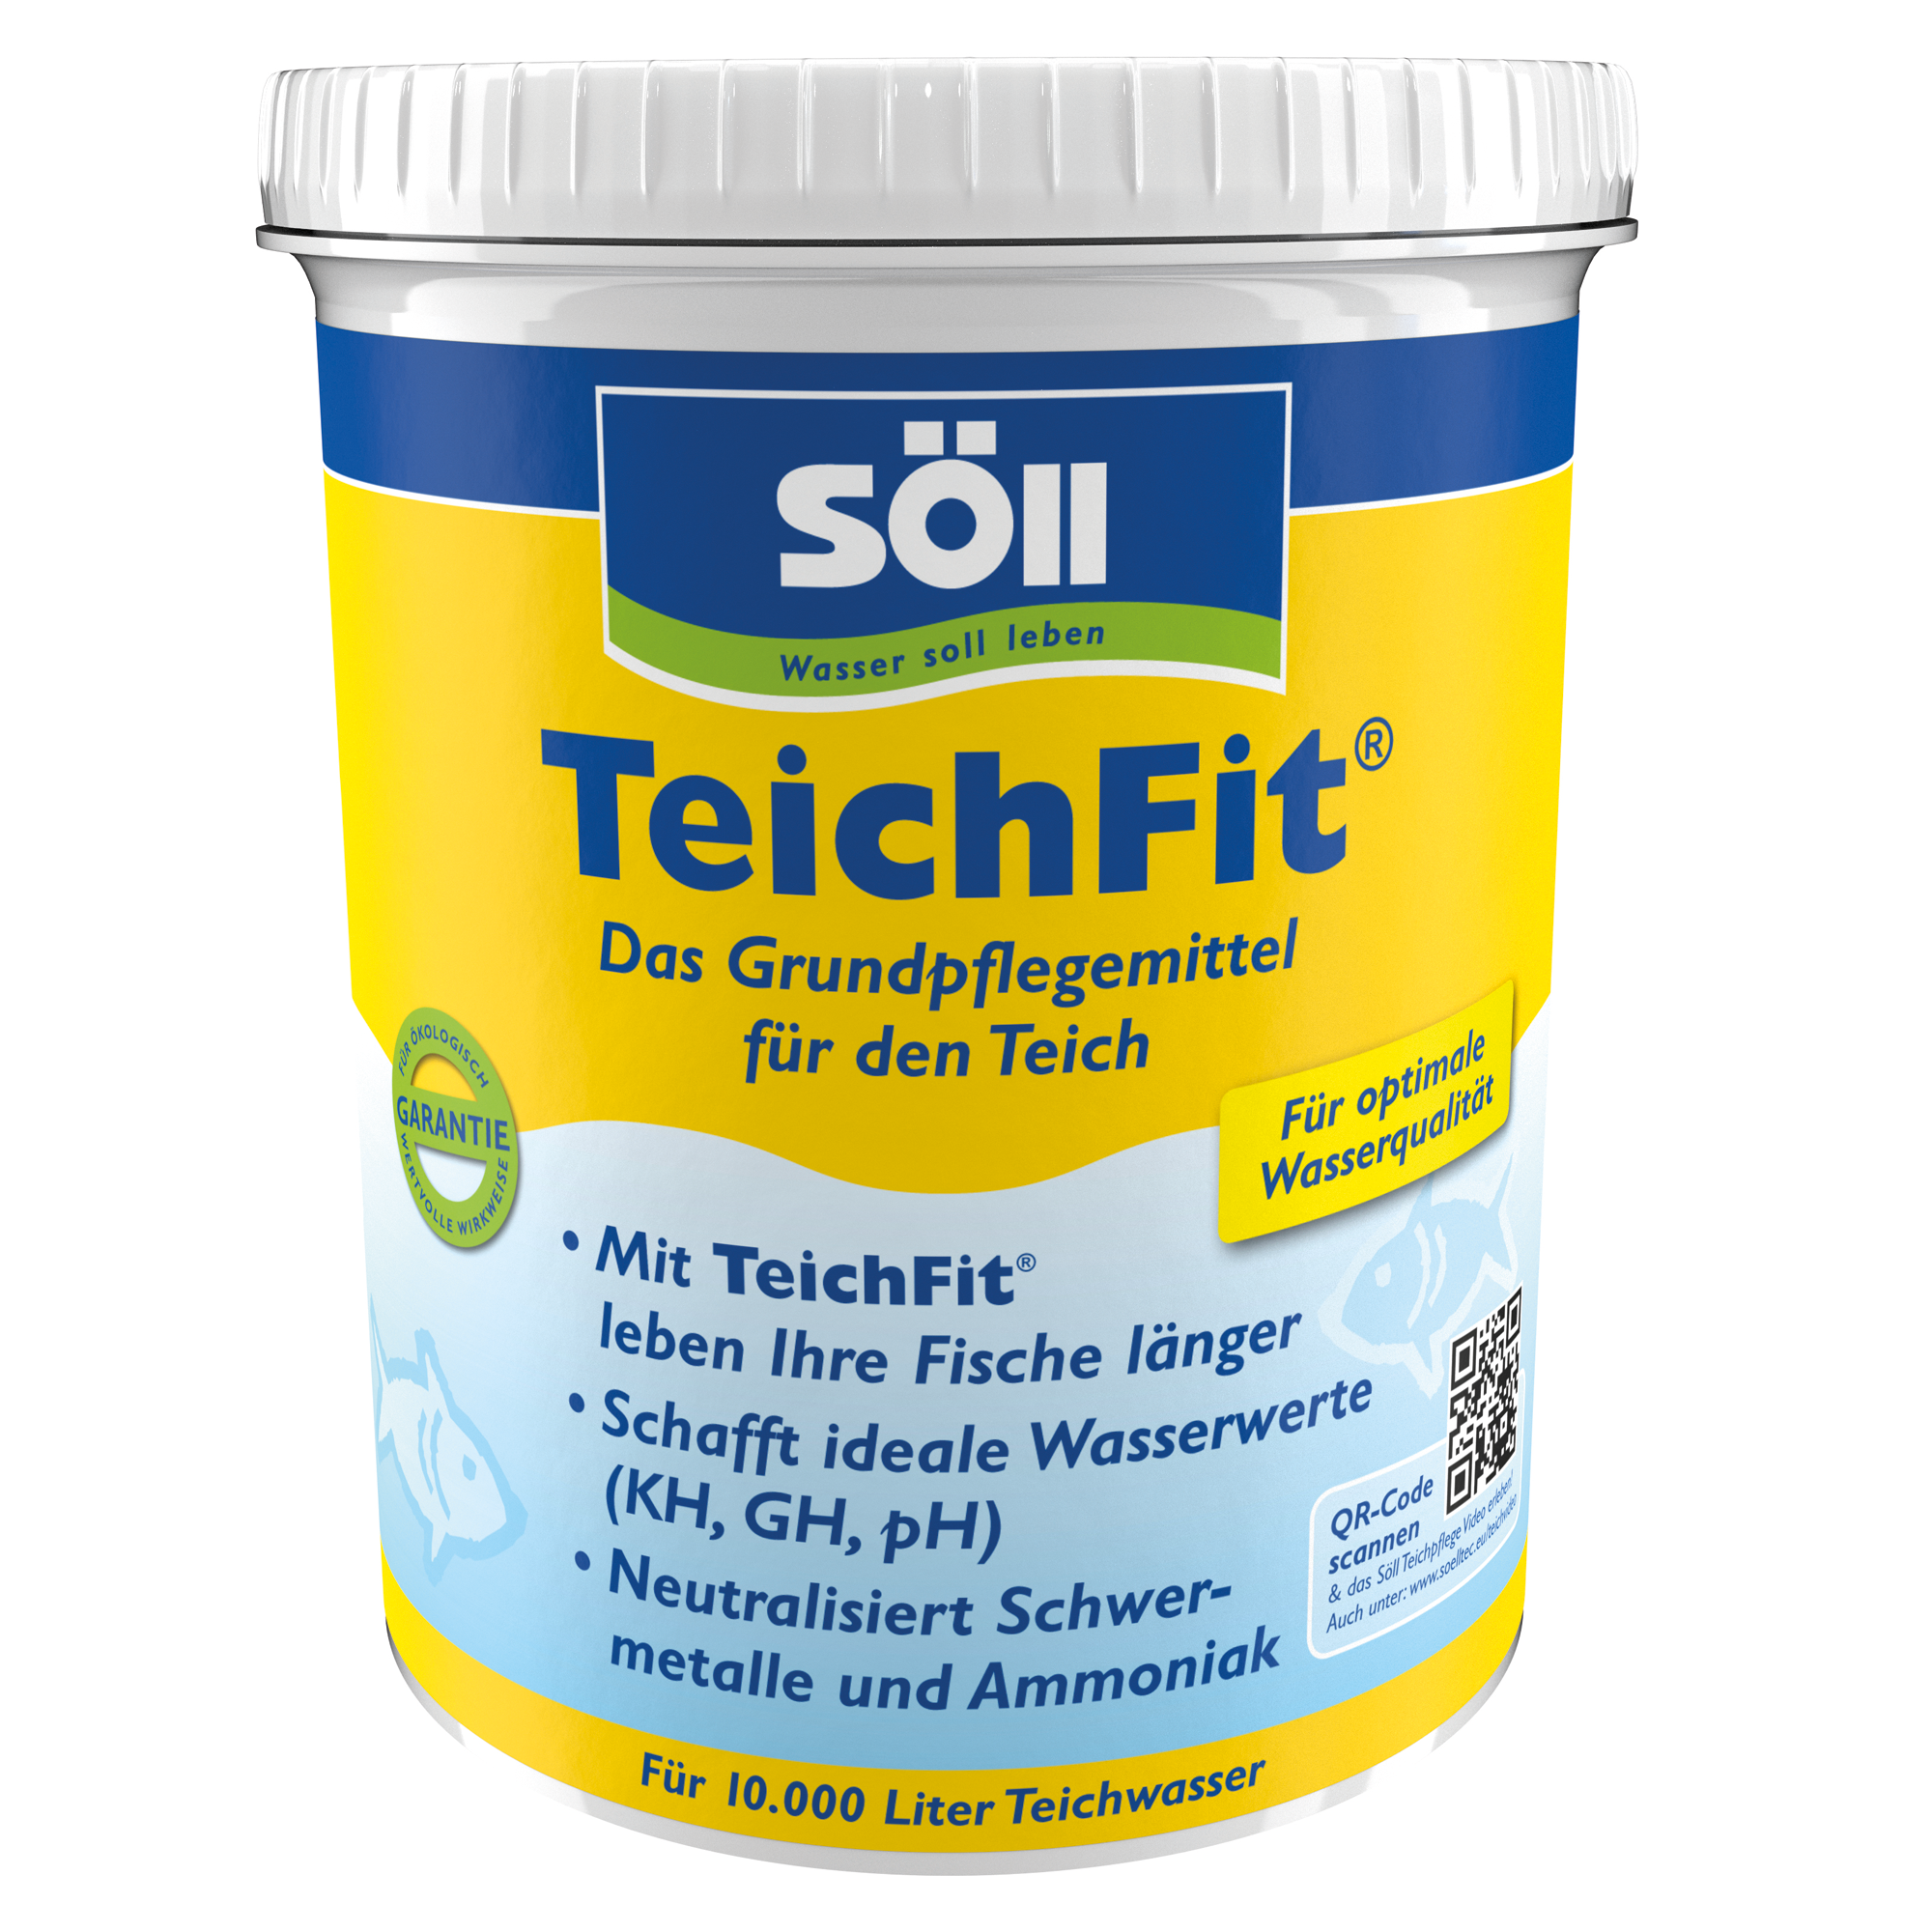 TeichFit 1 kg + product picture